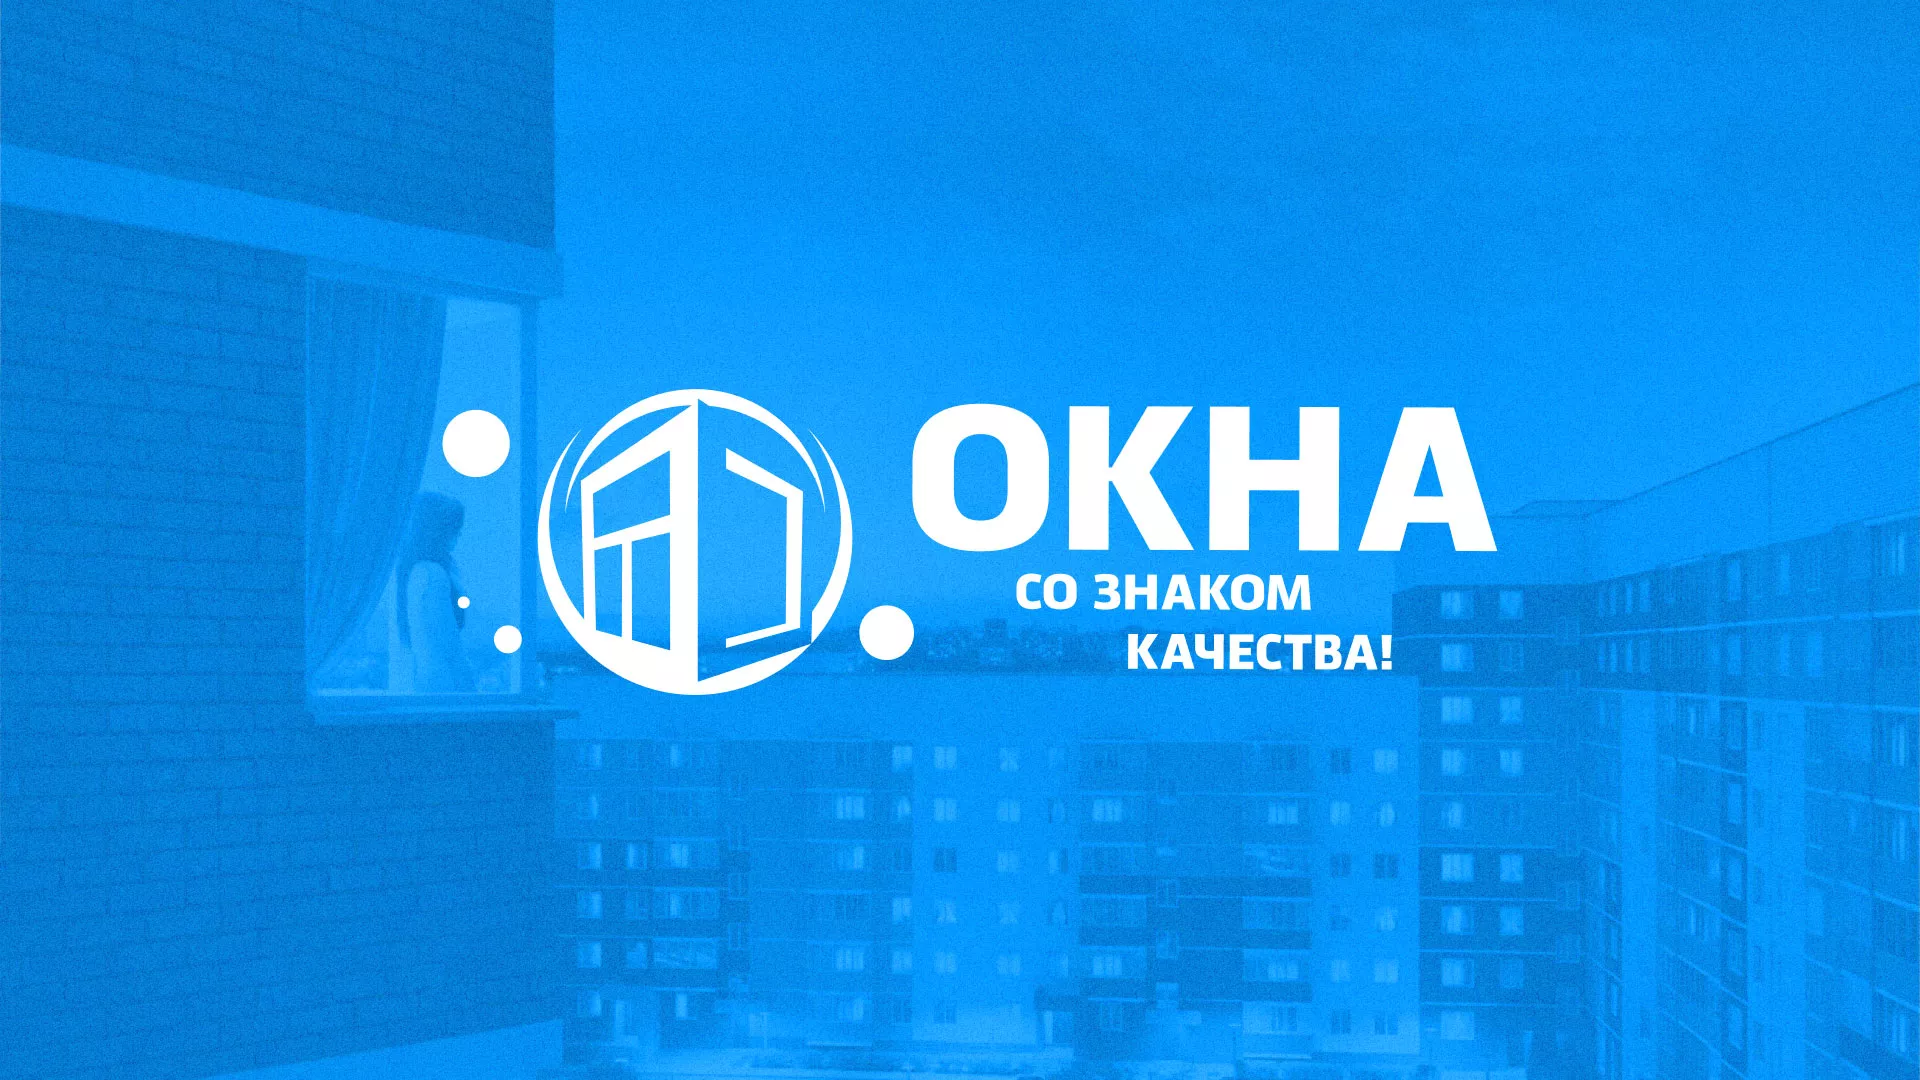 Создание сайта компании «Окна ВИДО» в Улане-Удэ